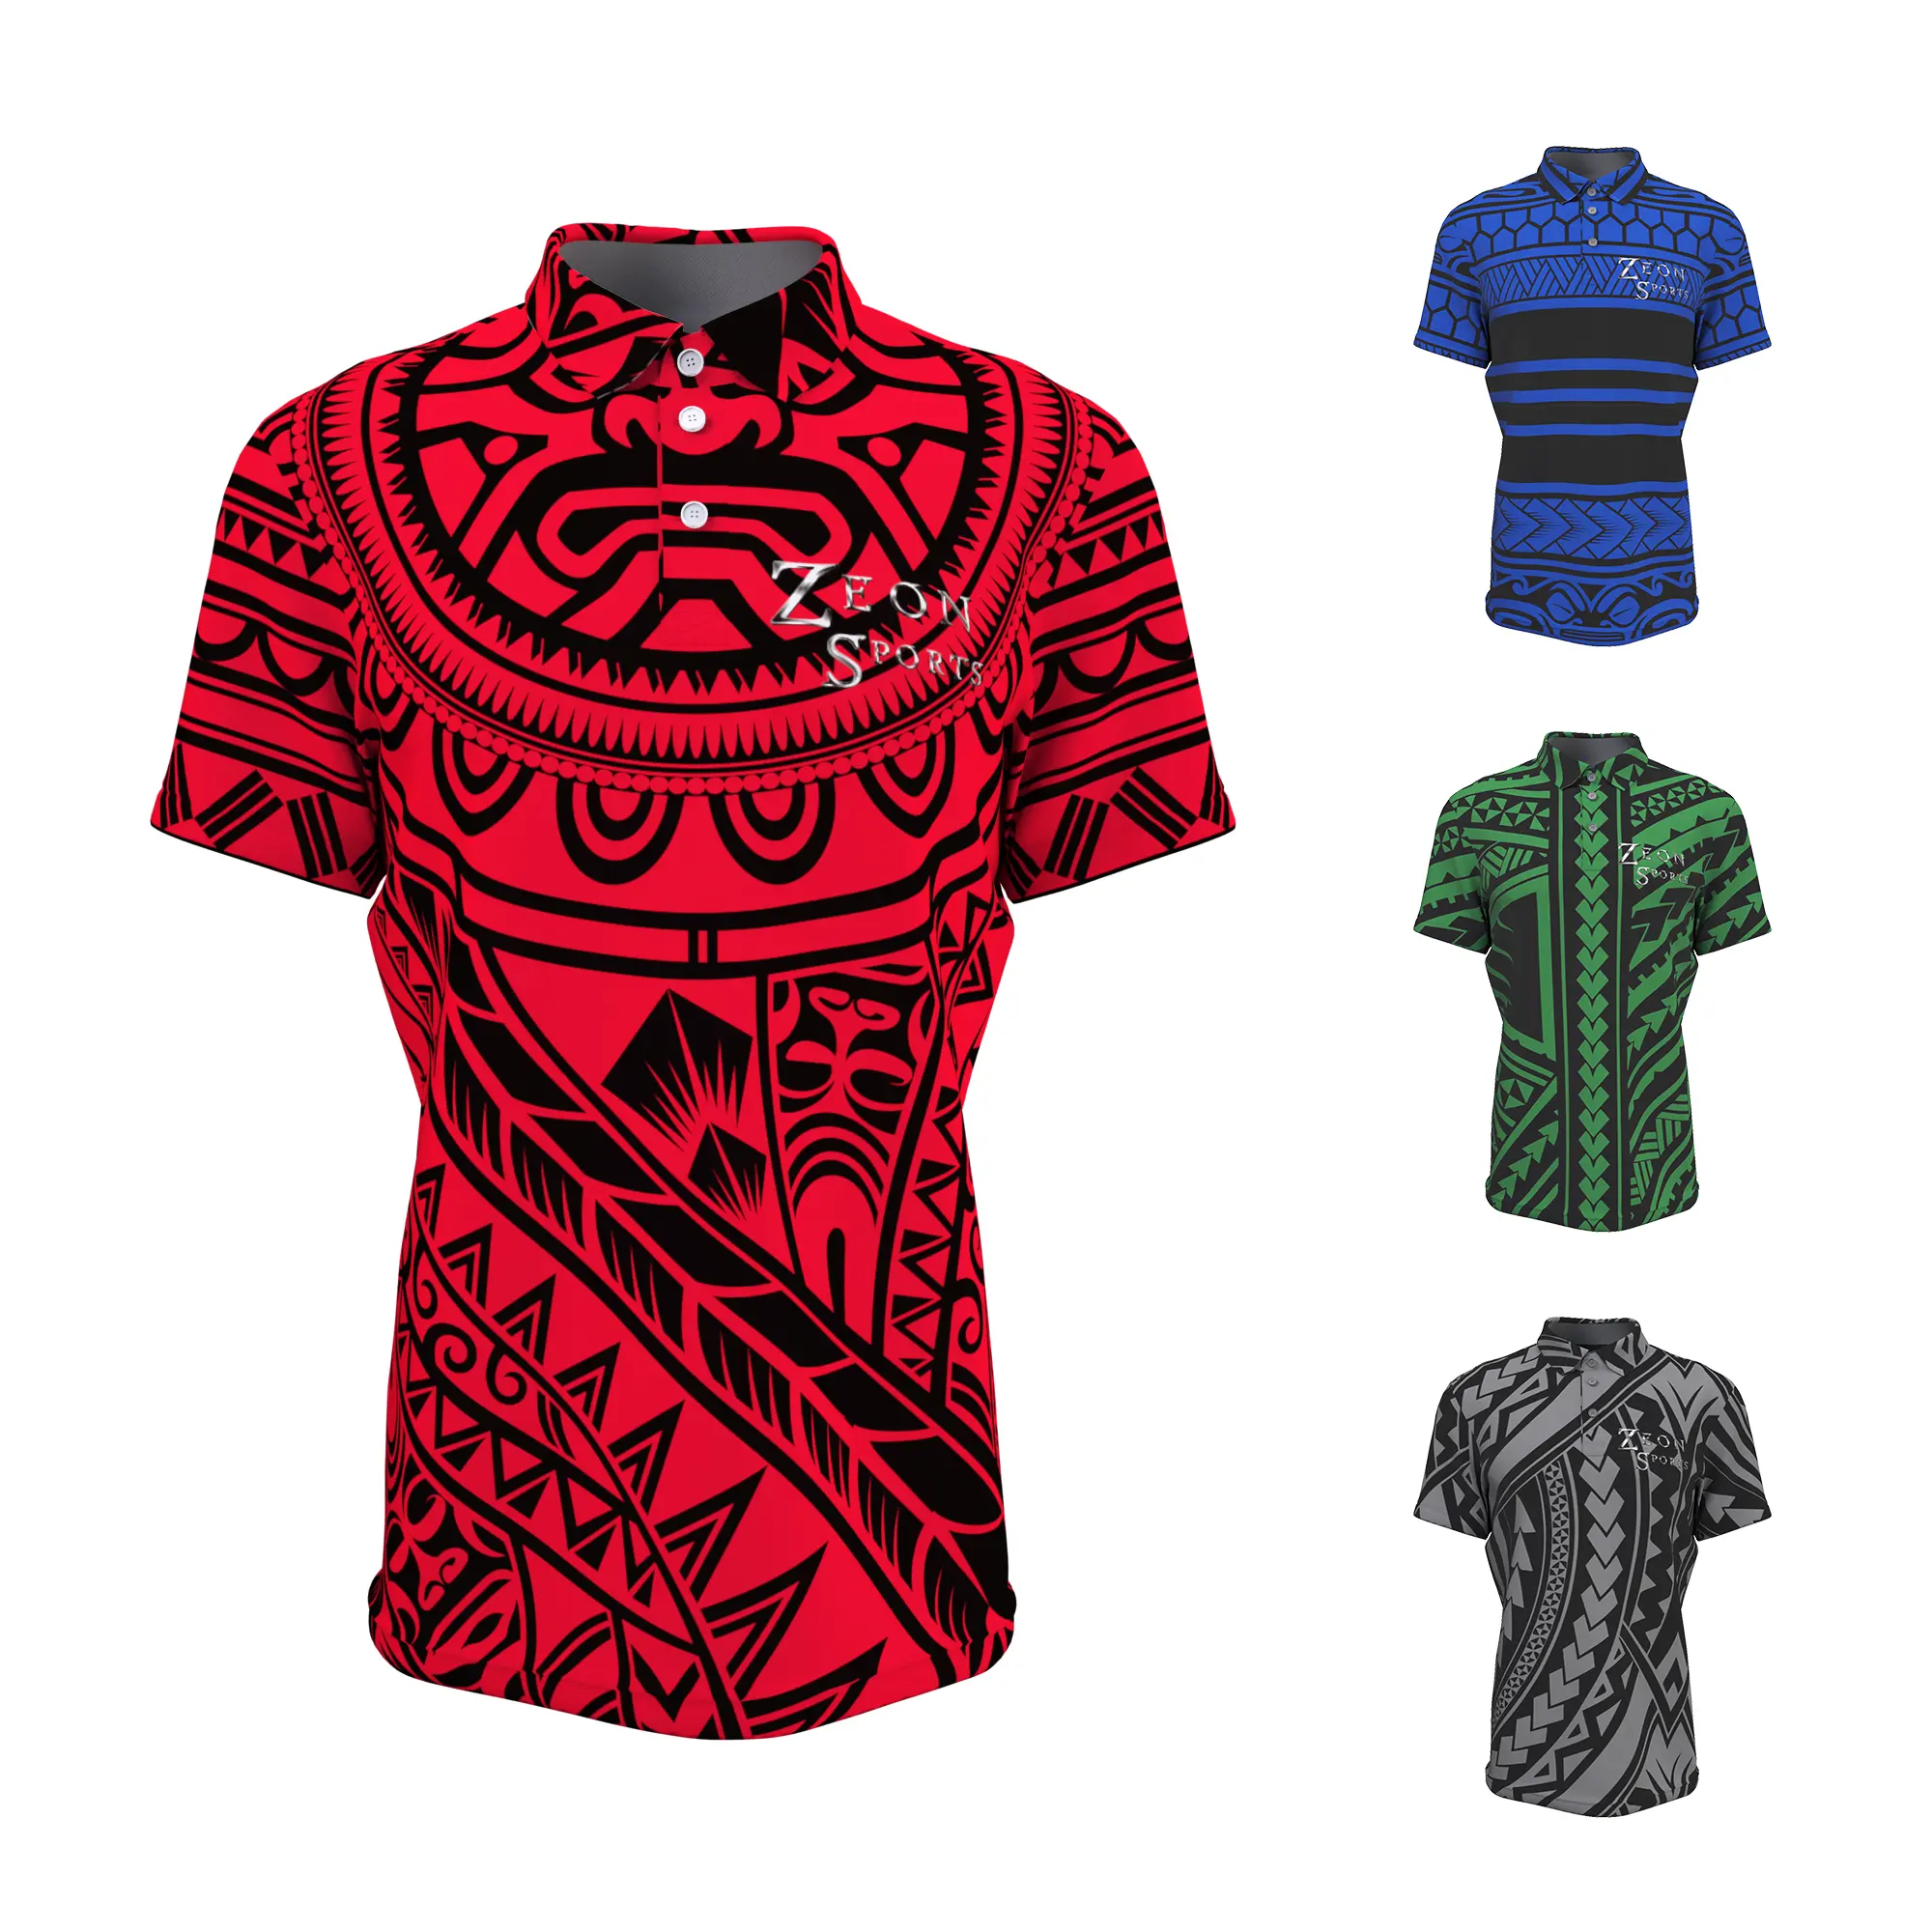 Toptan rugby polo gömlekler özel promosyon erkek polo gömlekler polo gömlekler yüksek kaliteli süblimasyon baskı spor gömlek